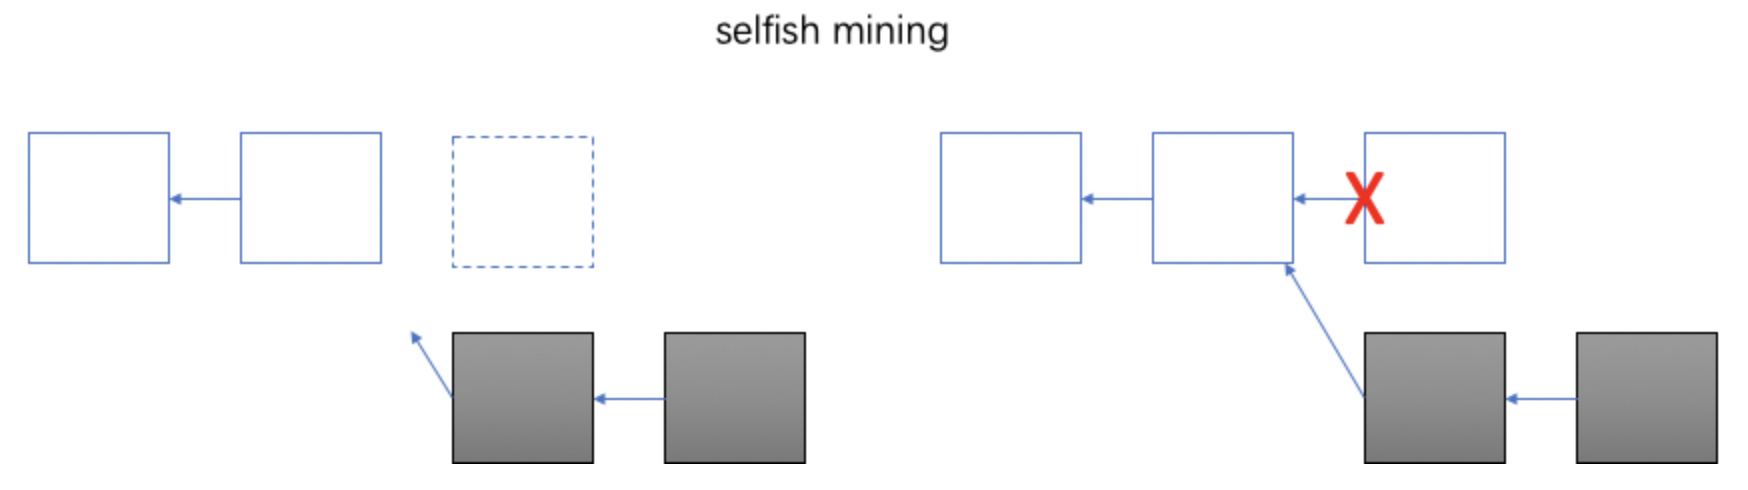 selfish_mining